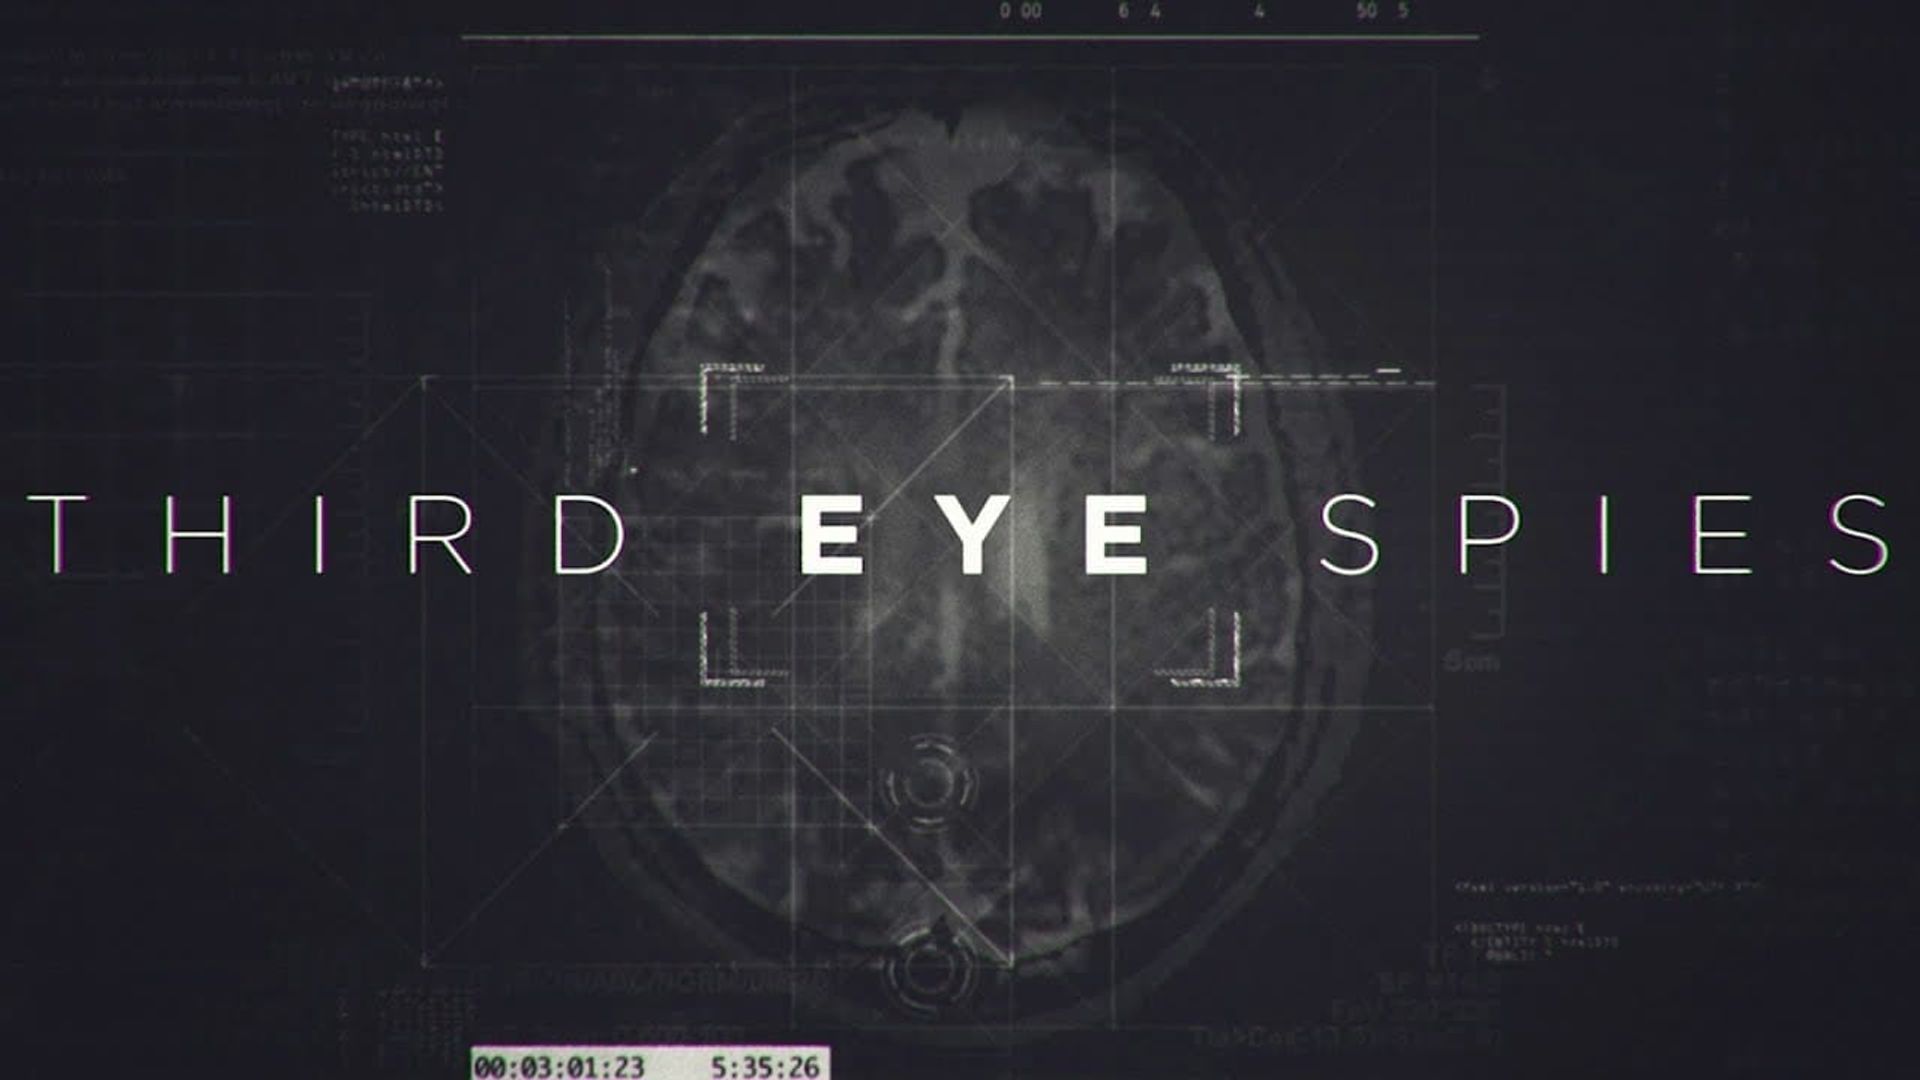 Third Eye Spies background